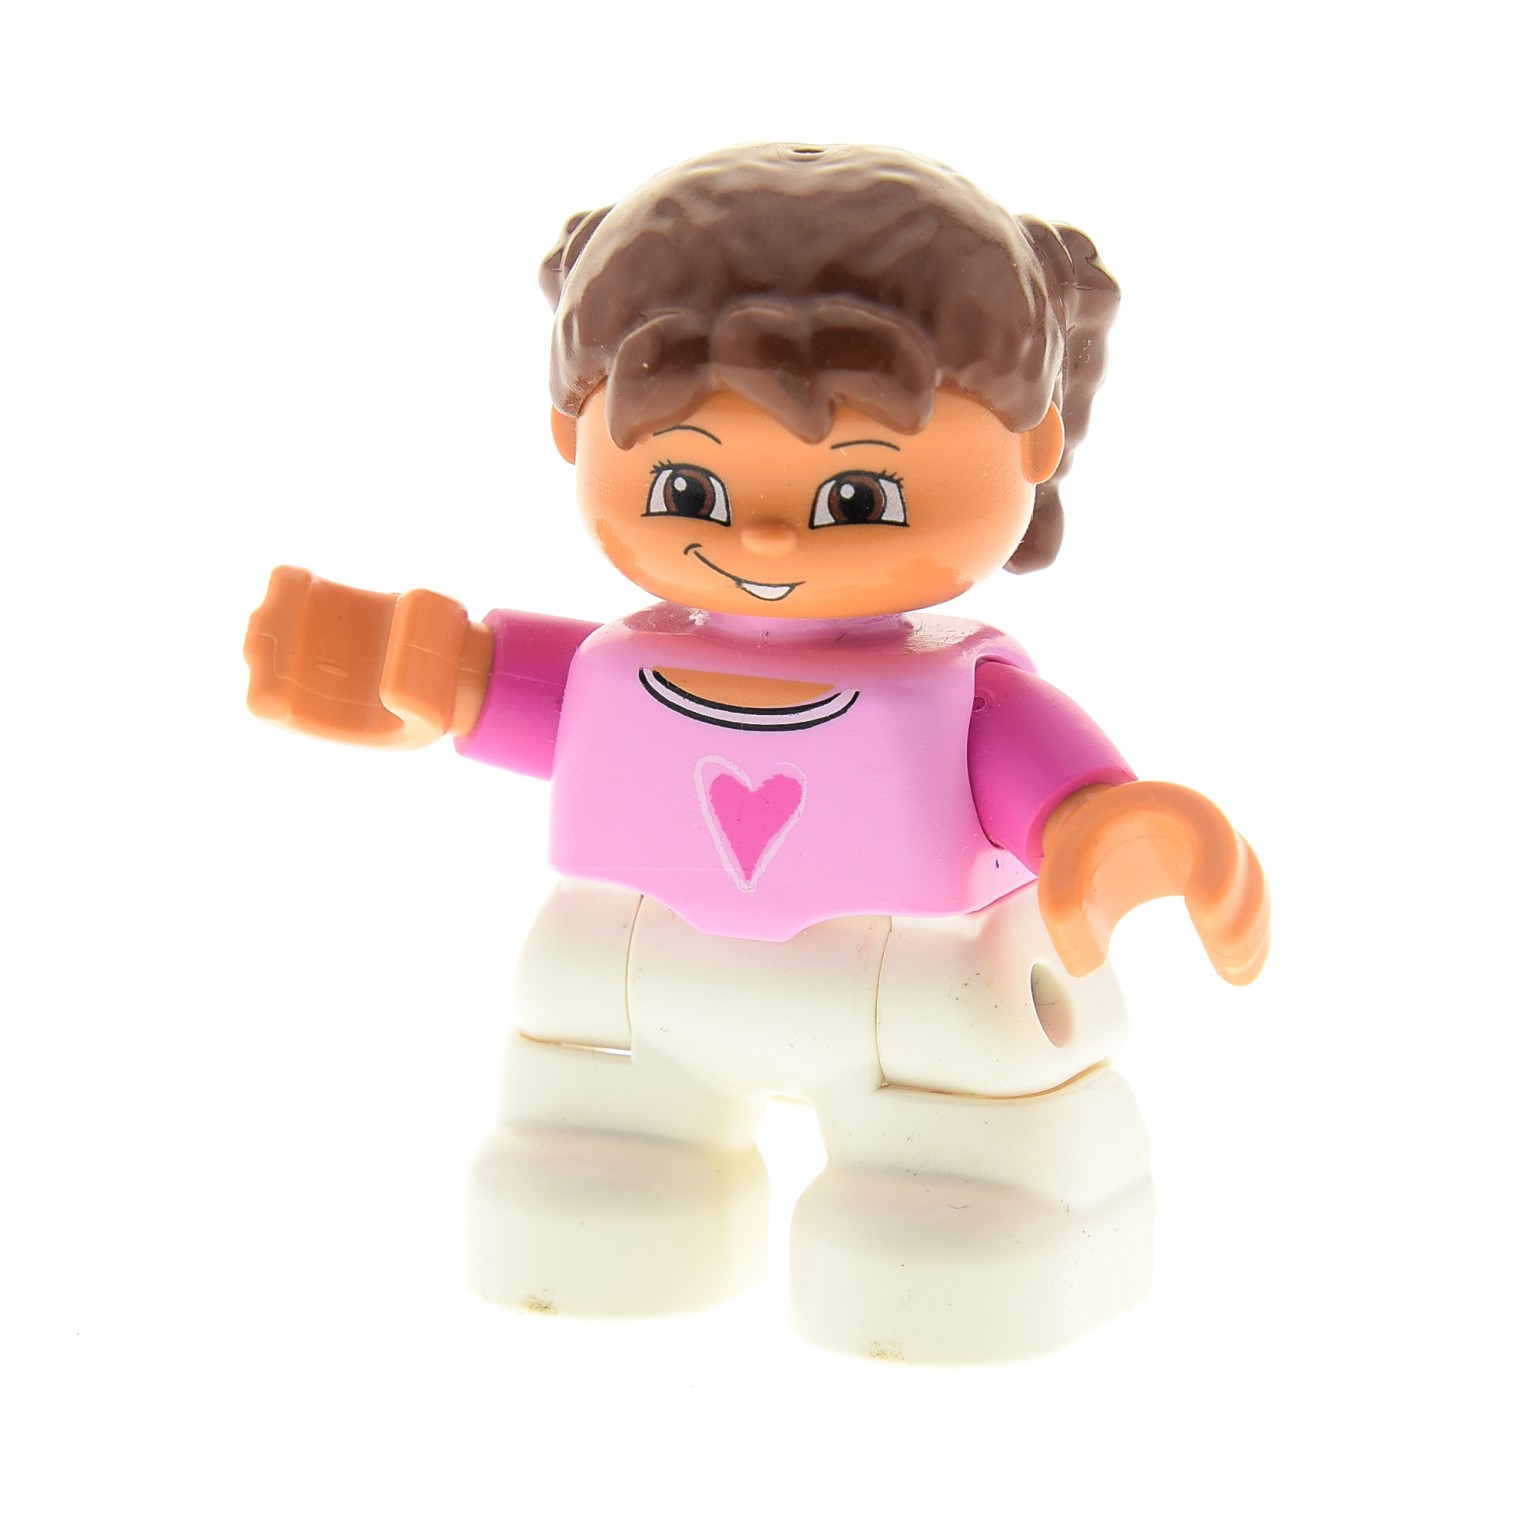 1x Lego Duplo Figur Mädchen Kleid gelb Haare braun Puppenkind Lisa 31312pb02 